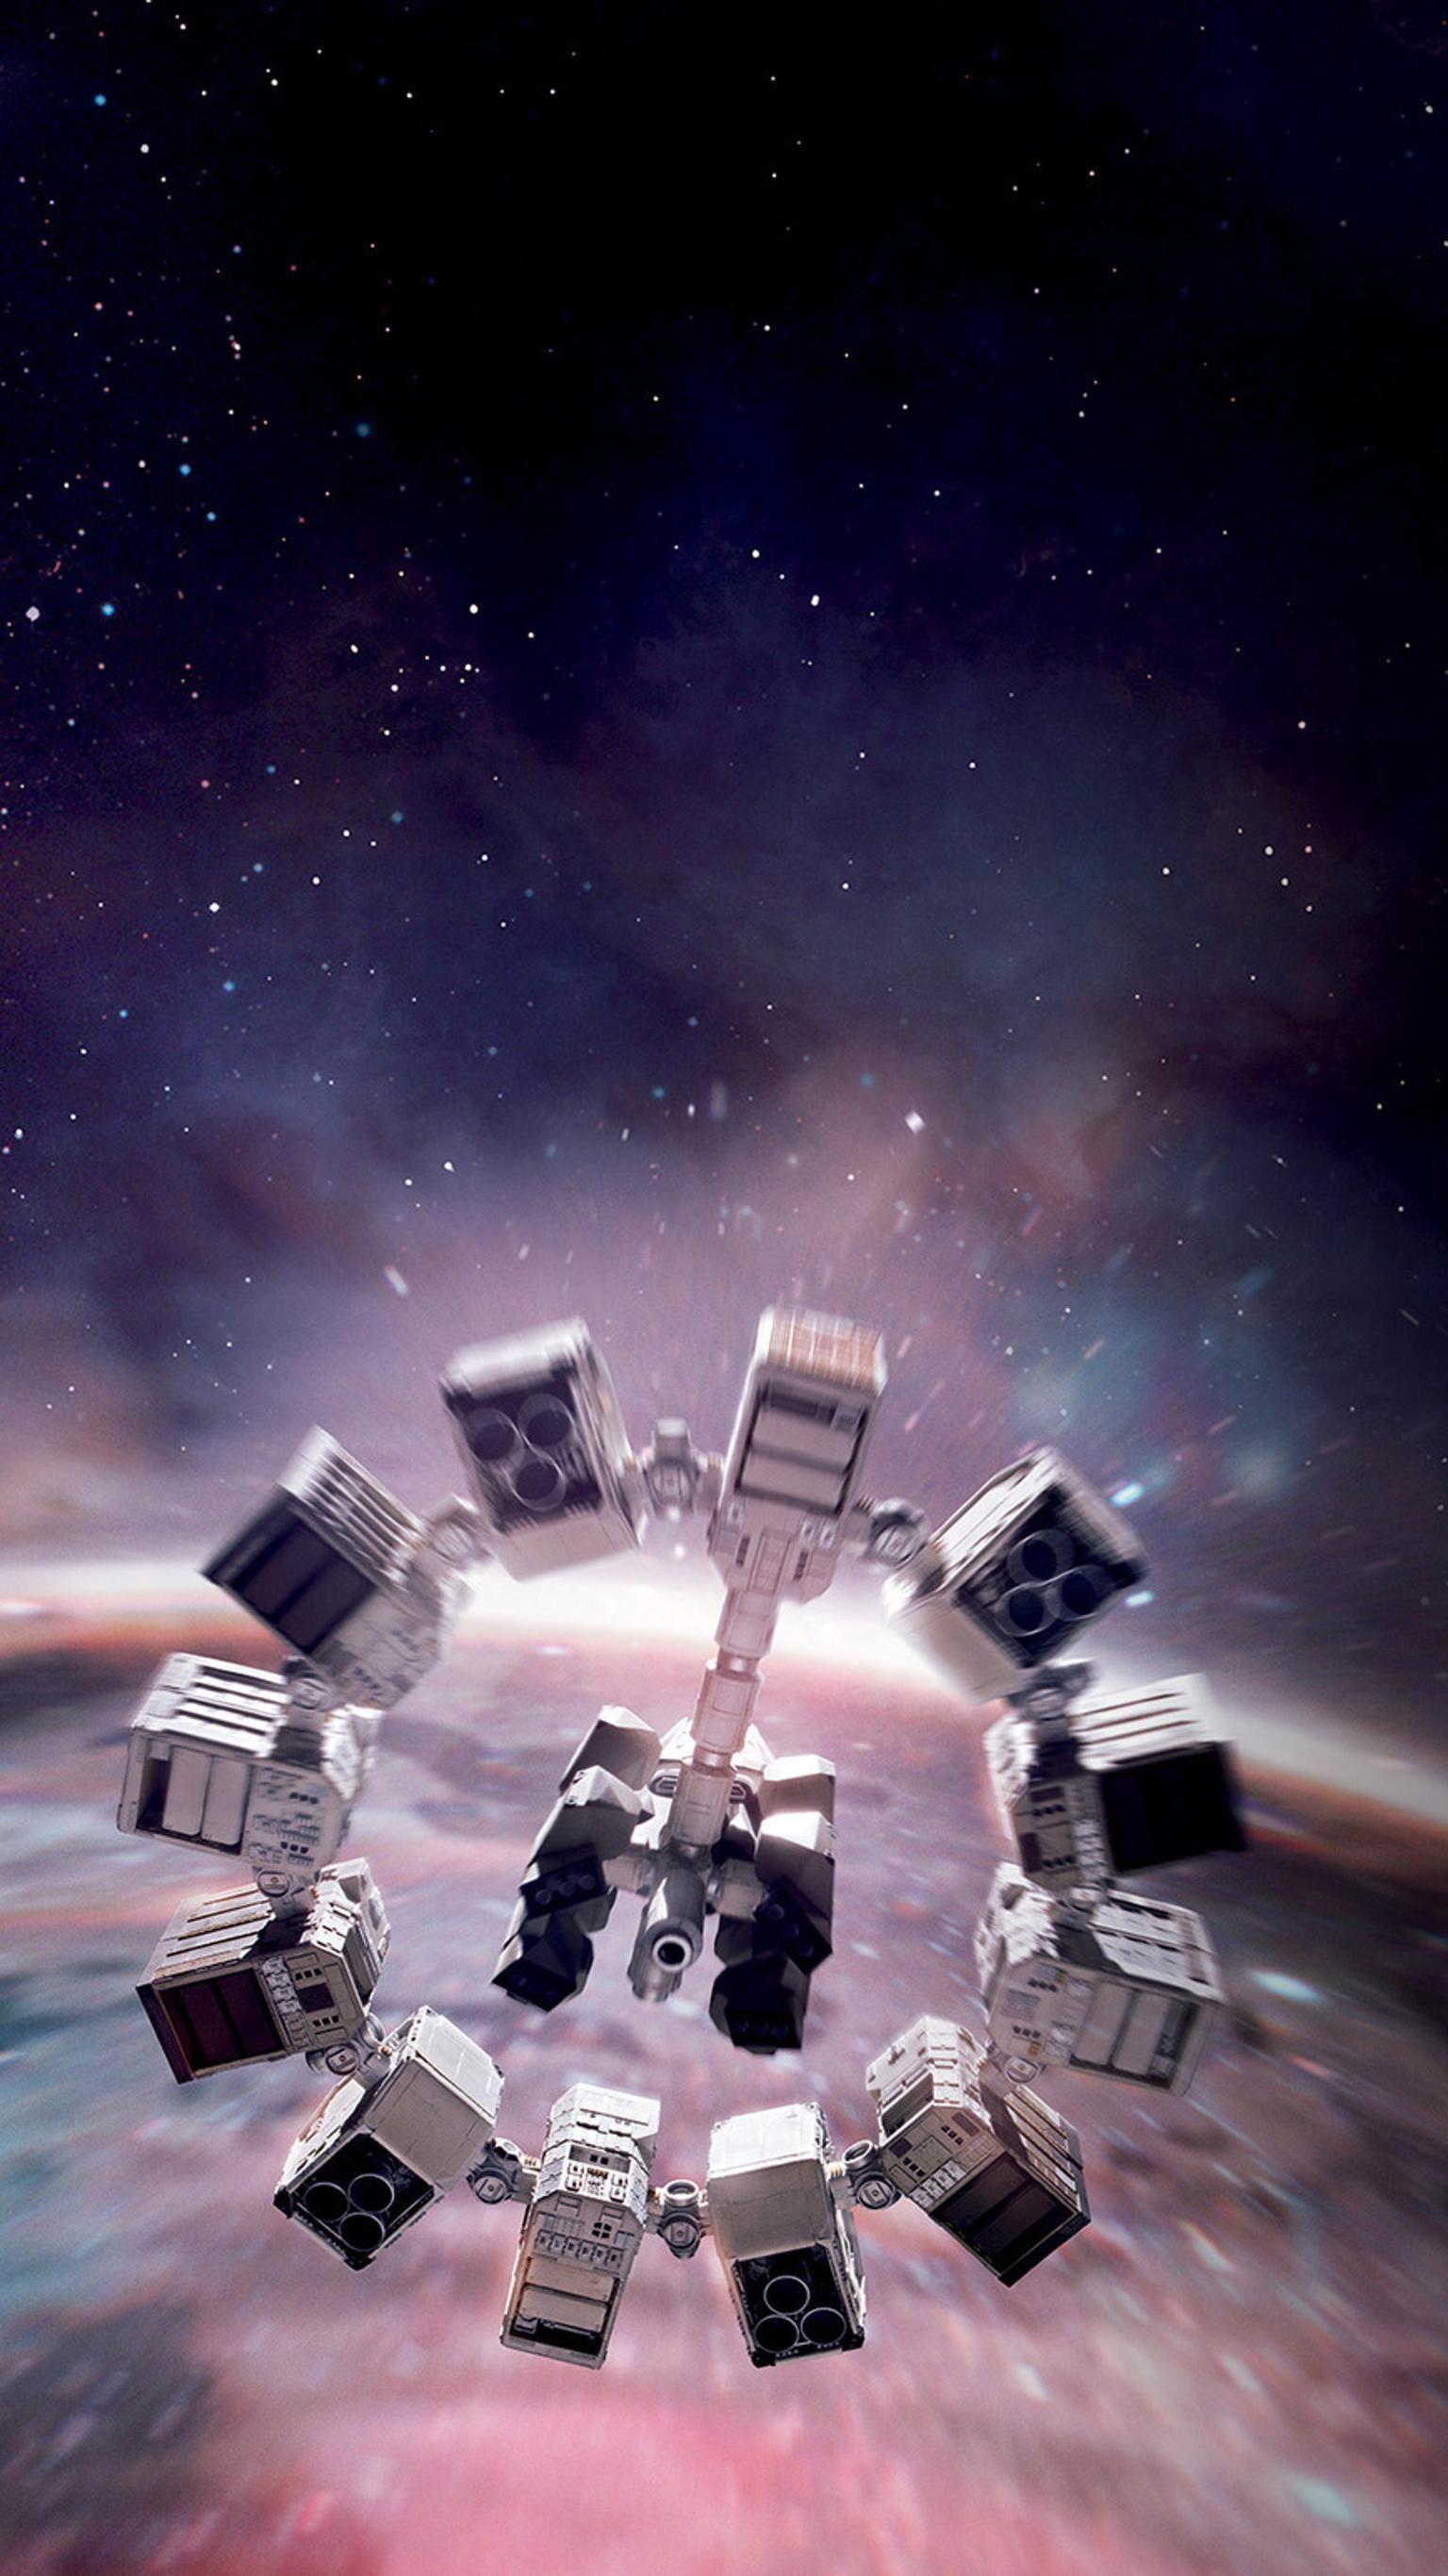 Interstellar (2014) Phone Wallpaper. Interestelar, Interestelar